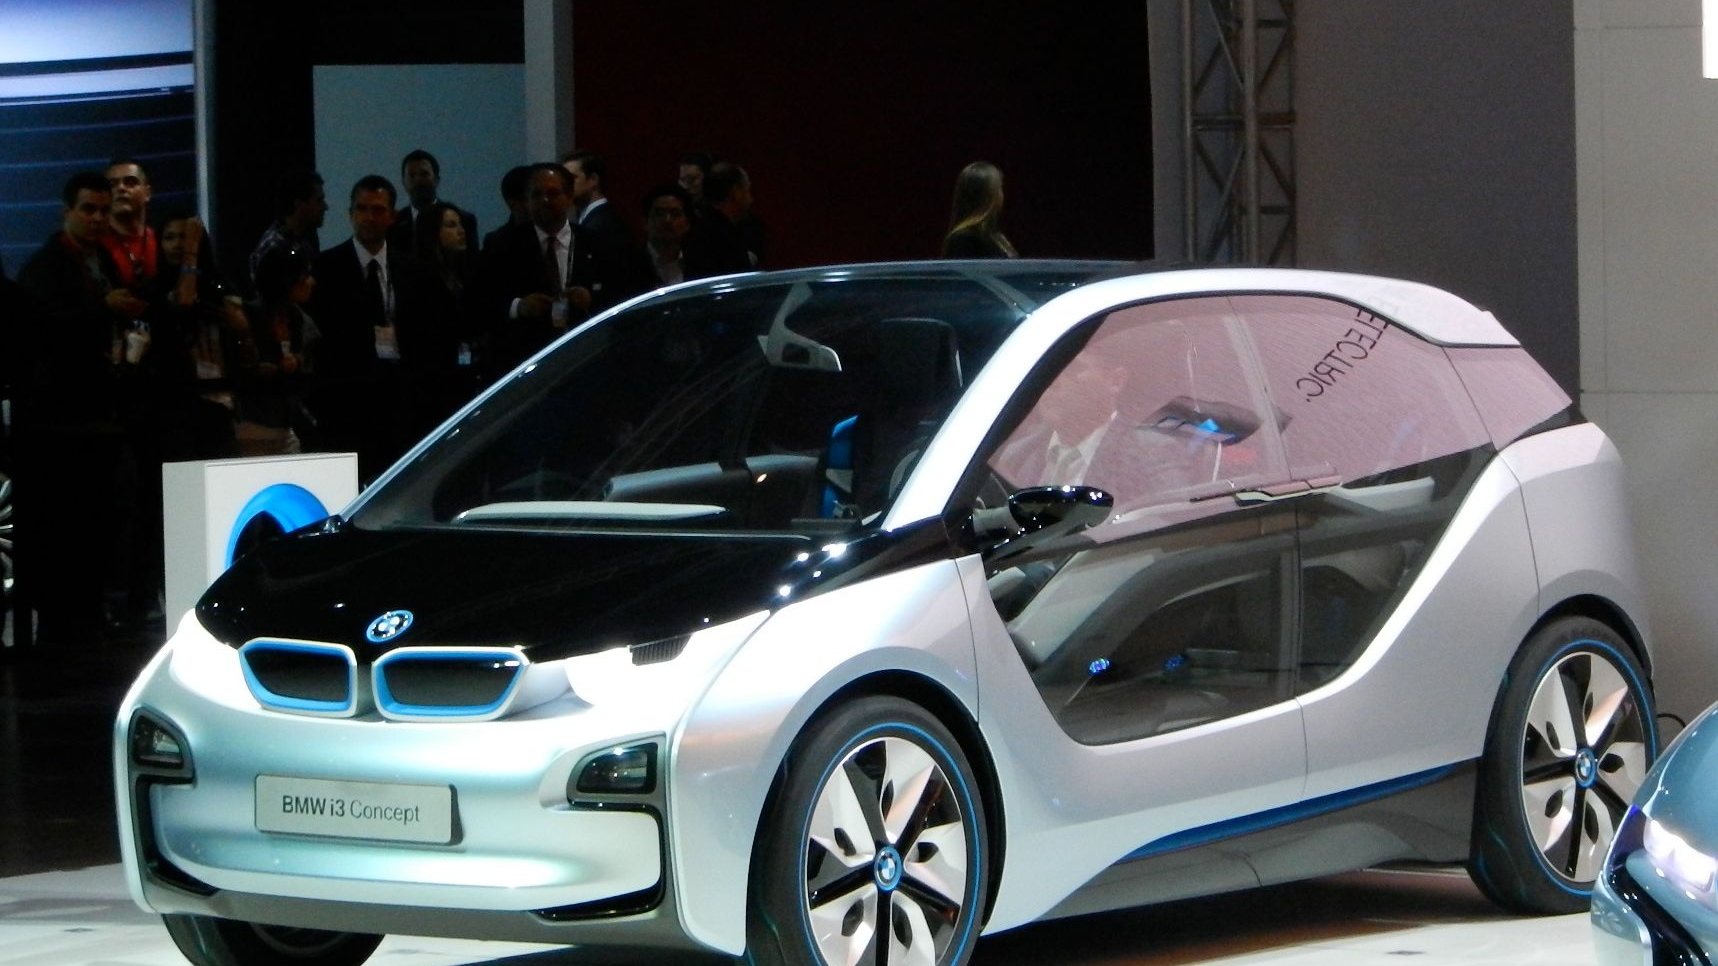 BMW i3 Concept, Nov. 2011